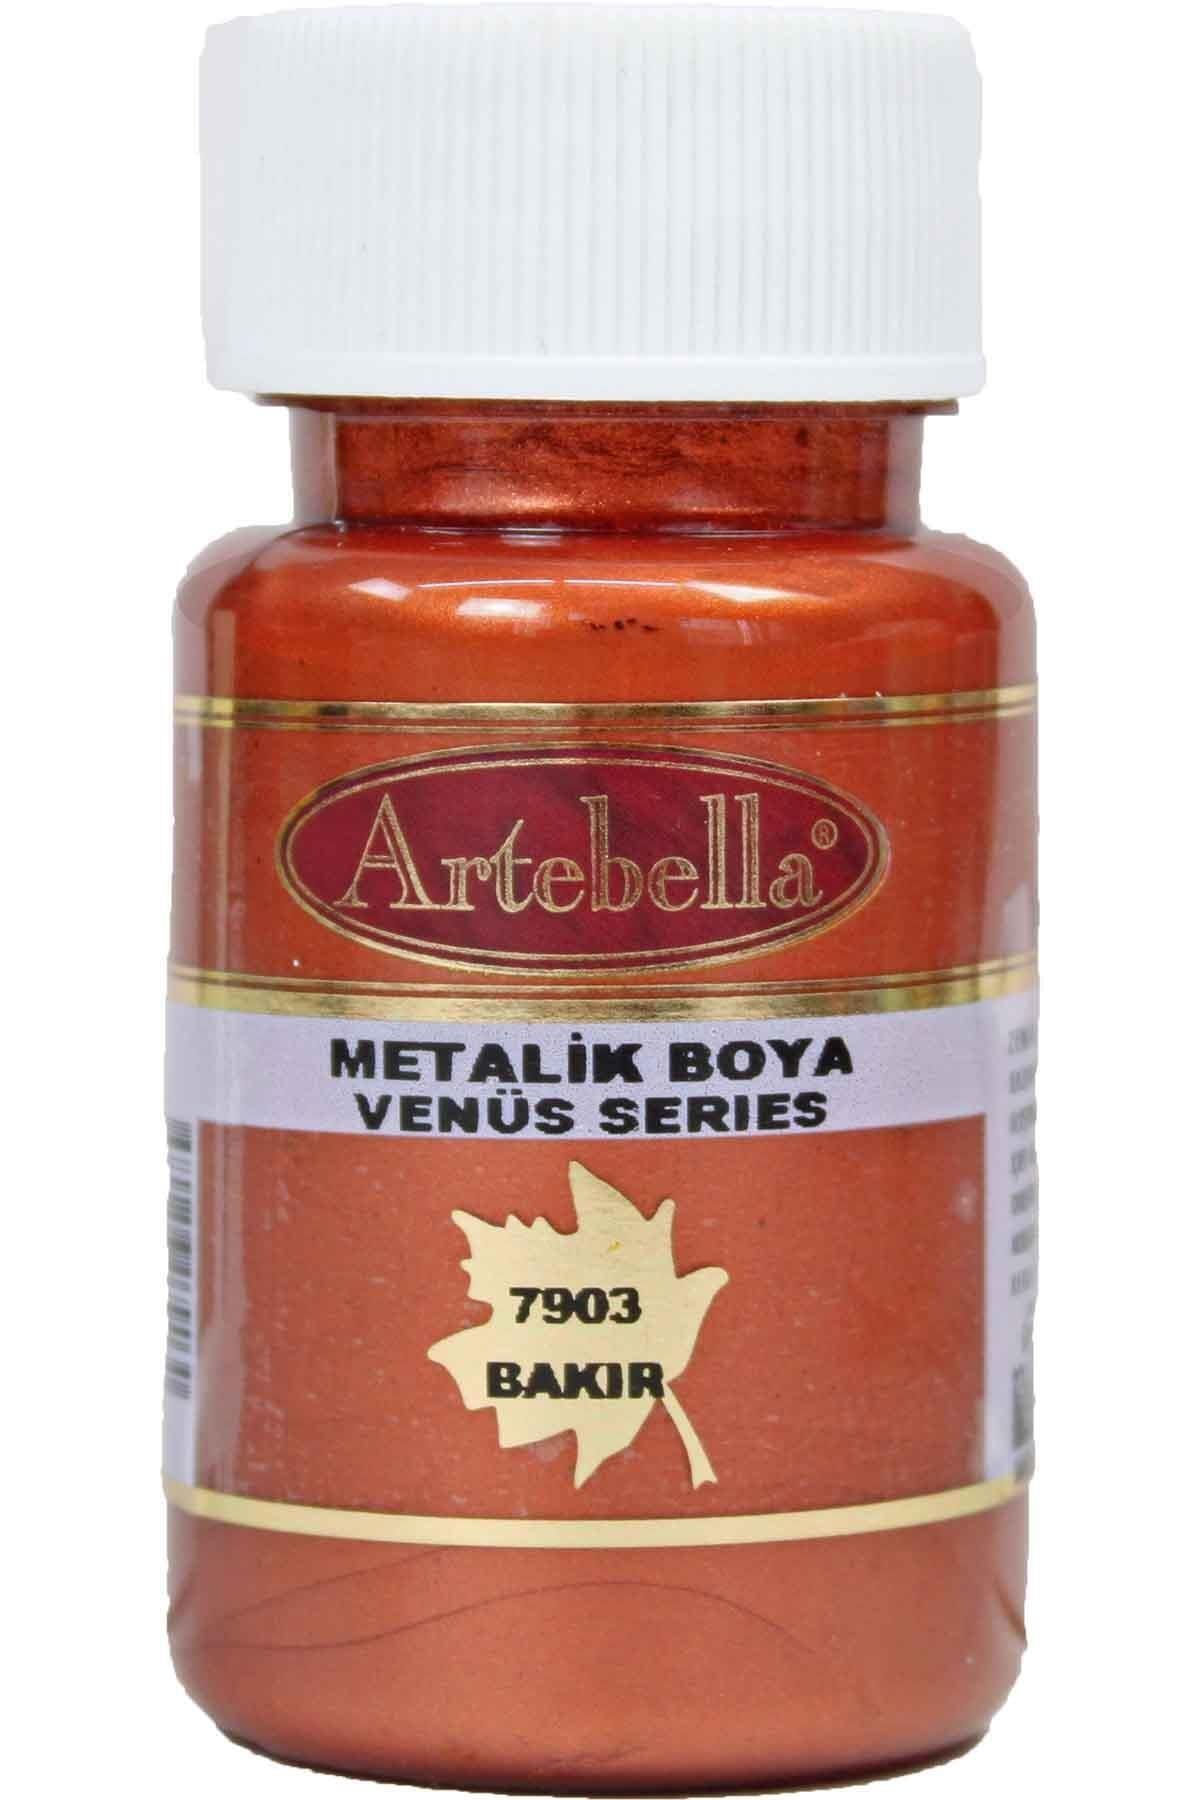 Artebella Venüs Serisi Metalik Boya 790350 Bakır 50 Ml